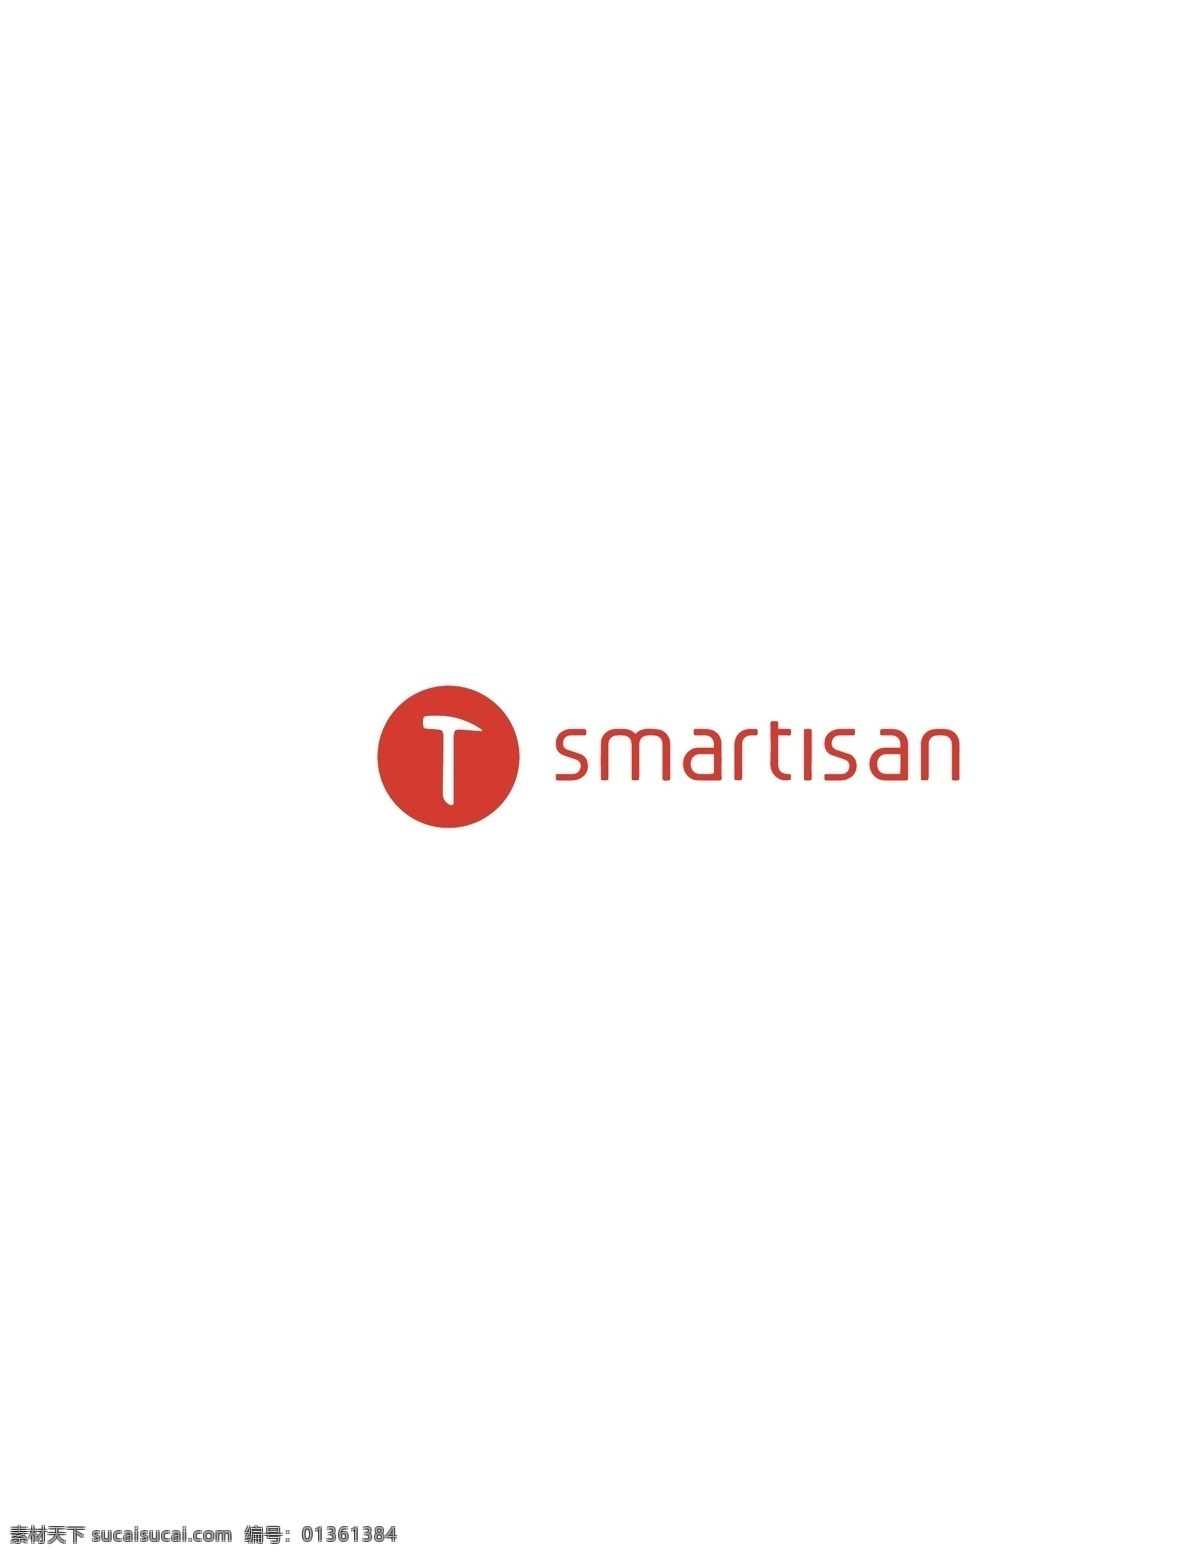 锤子 手机 logo 锤子手机 smartisan 坚果手机 手机品牌 logo设计